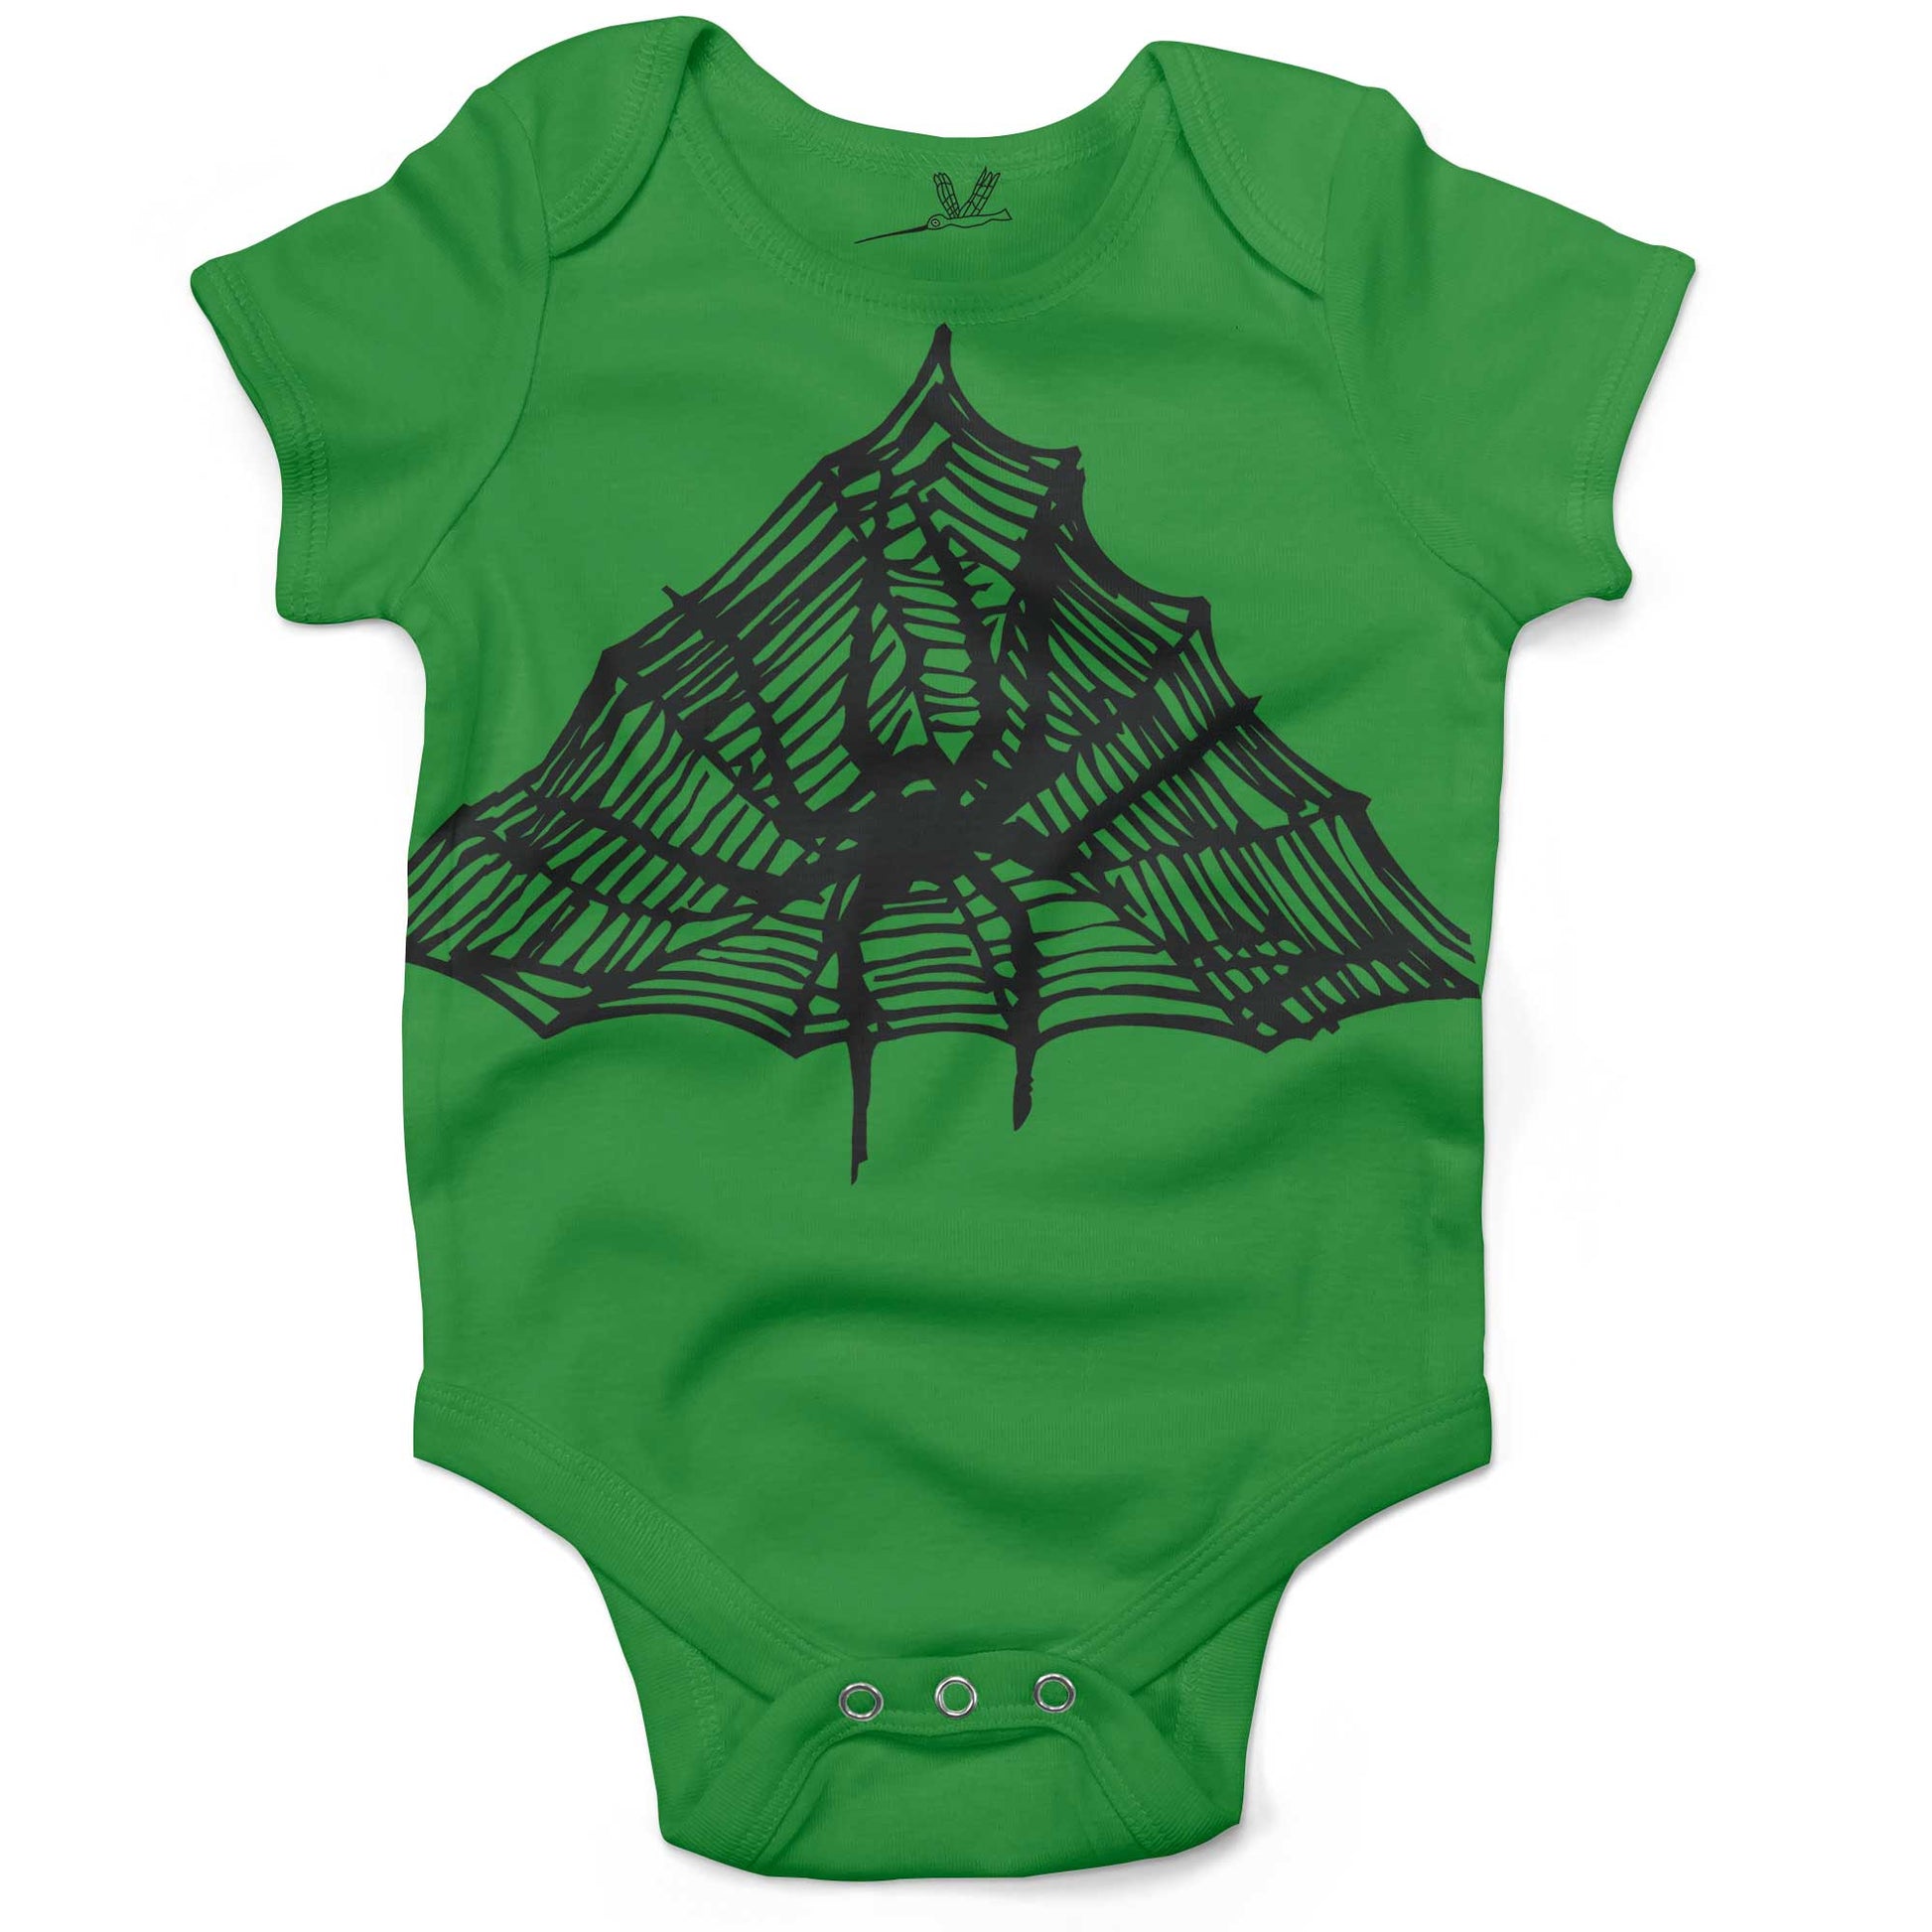 Spiderweb Infant Bodysuit-Grass Green-3-6 months